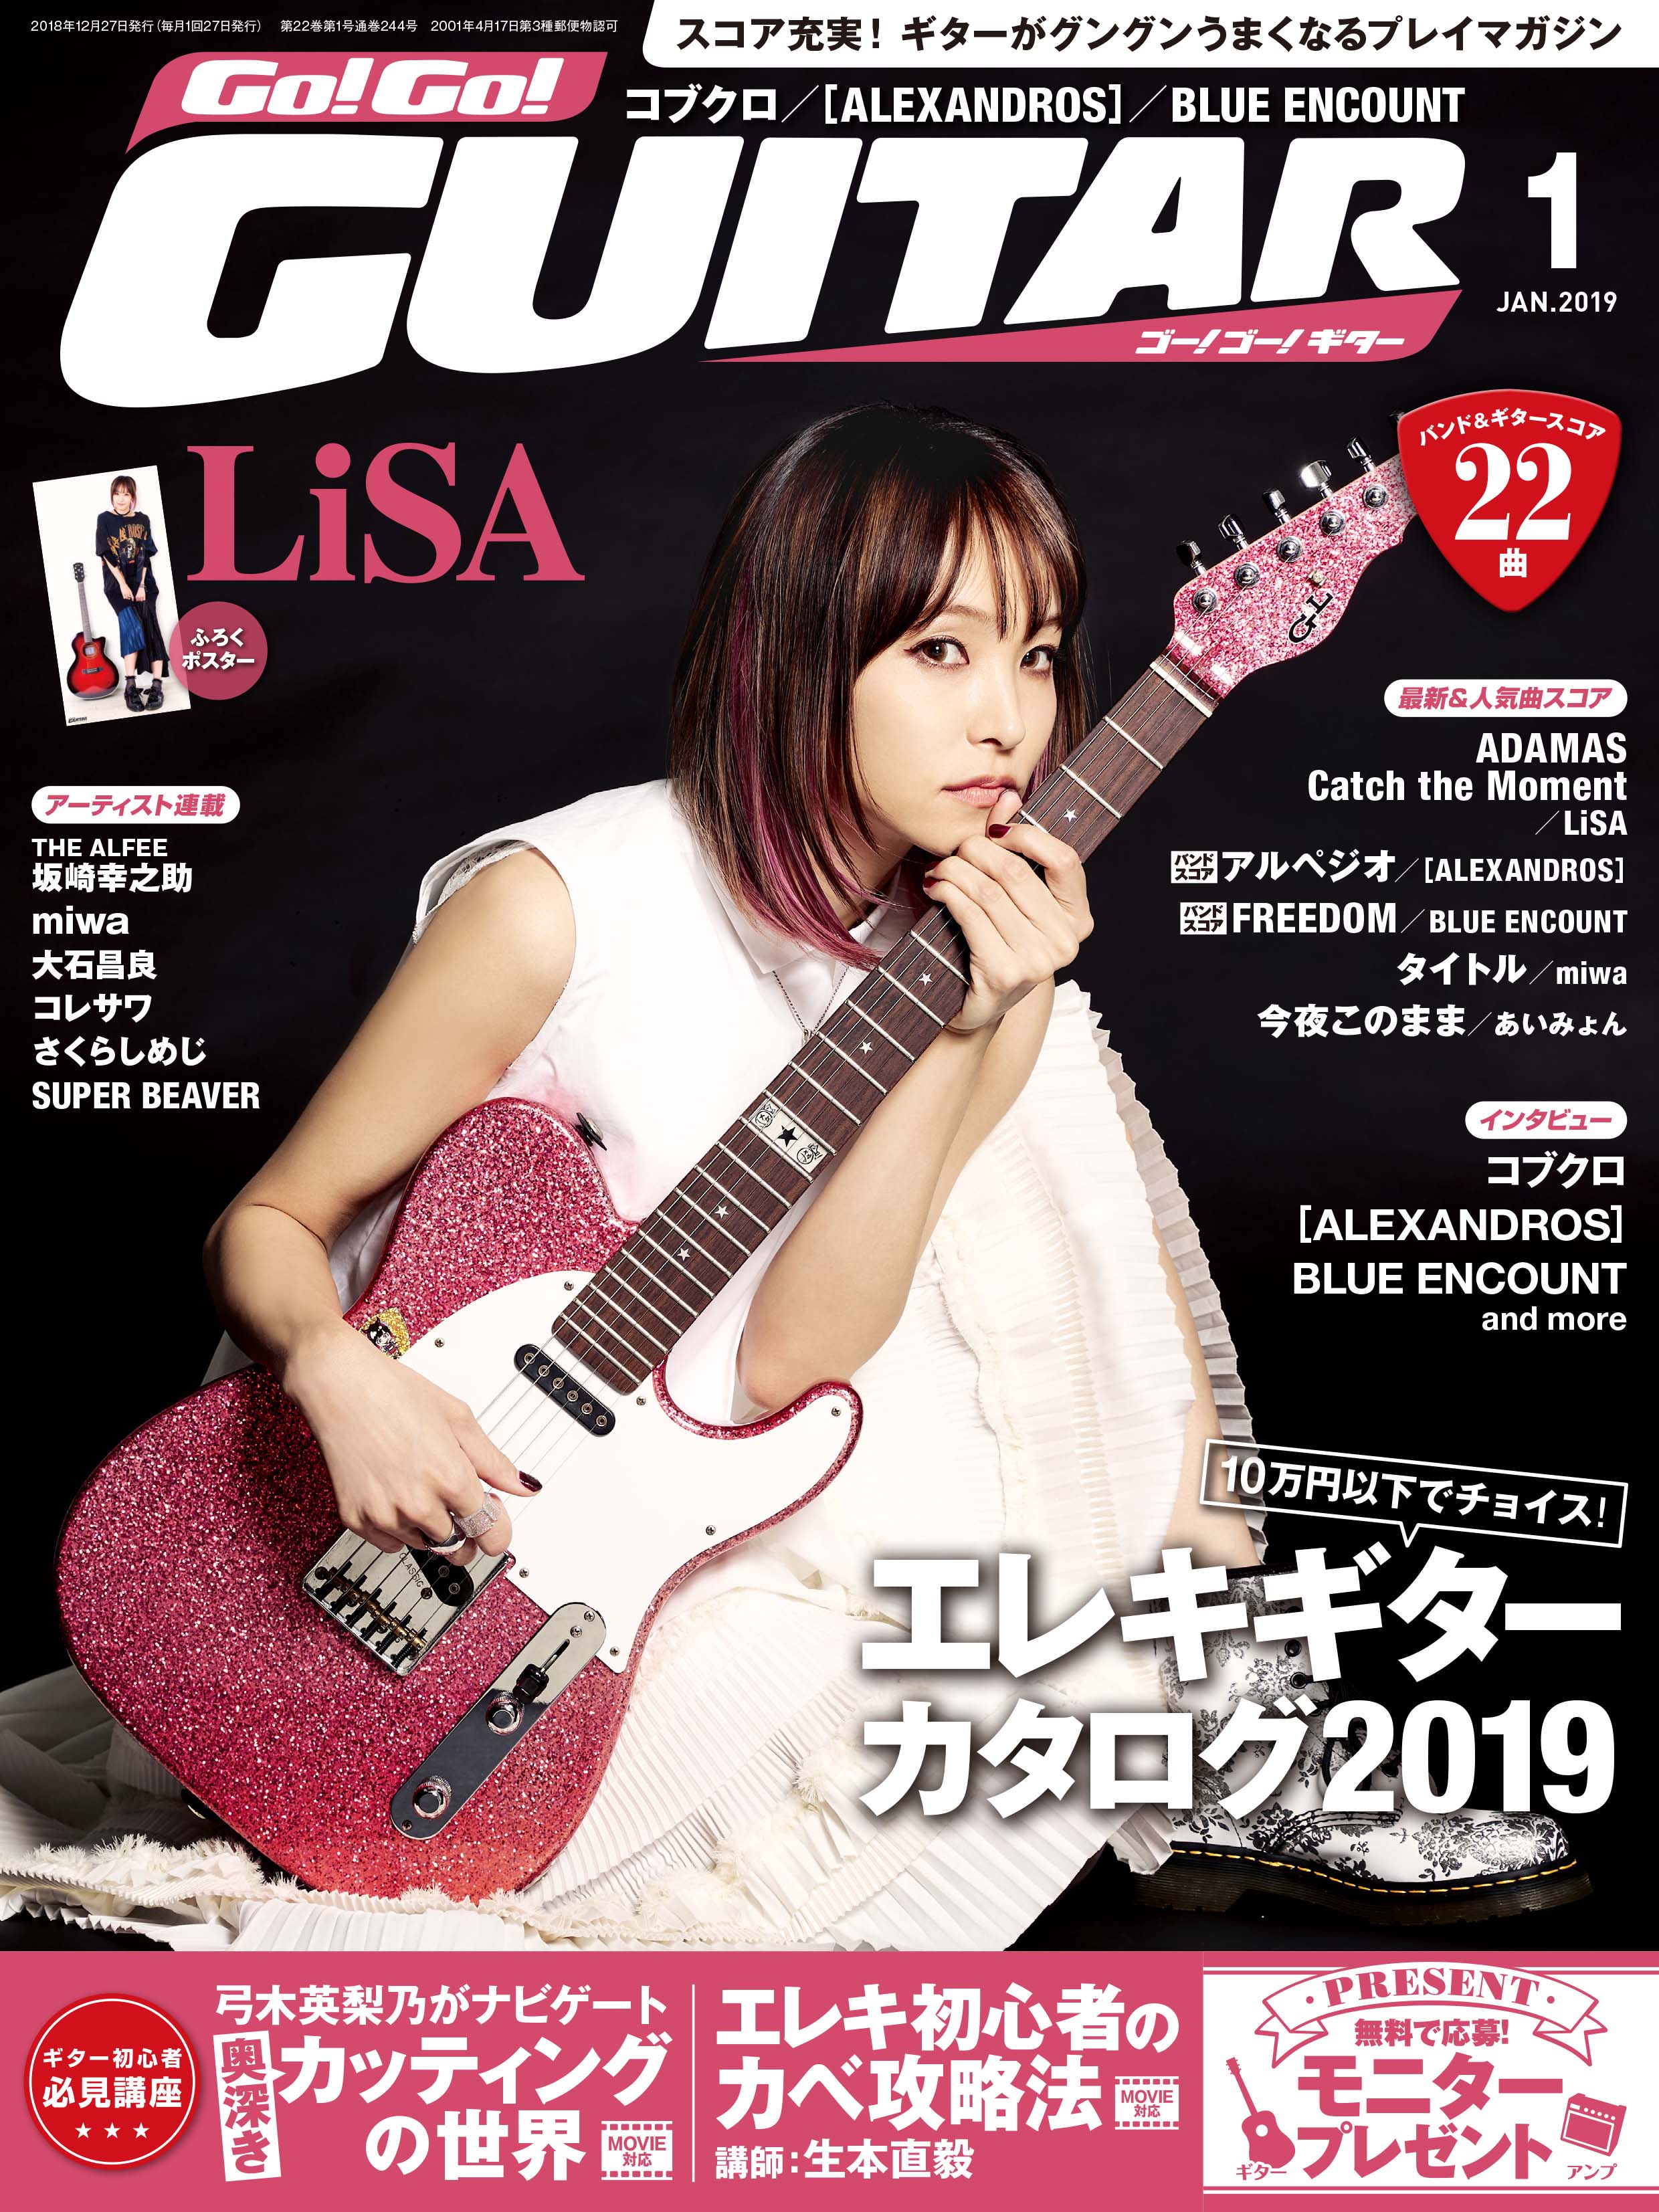 Go Go Guitar 1月号 11月27日発売 新曲 ａｄａｍａｓ が話題のロックヒロイン Lisa の大特集号 ヤマハミュージックエンタテインメントホールディングスのプレスリリース